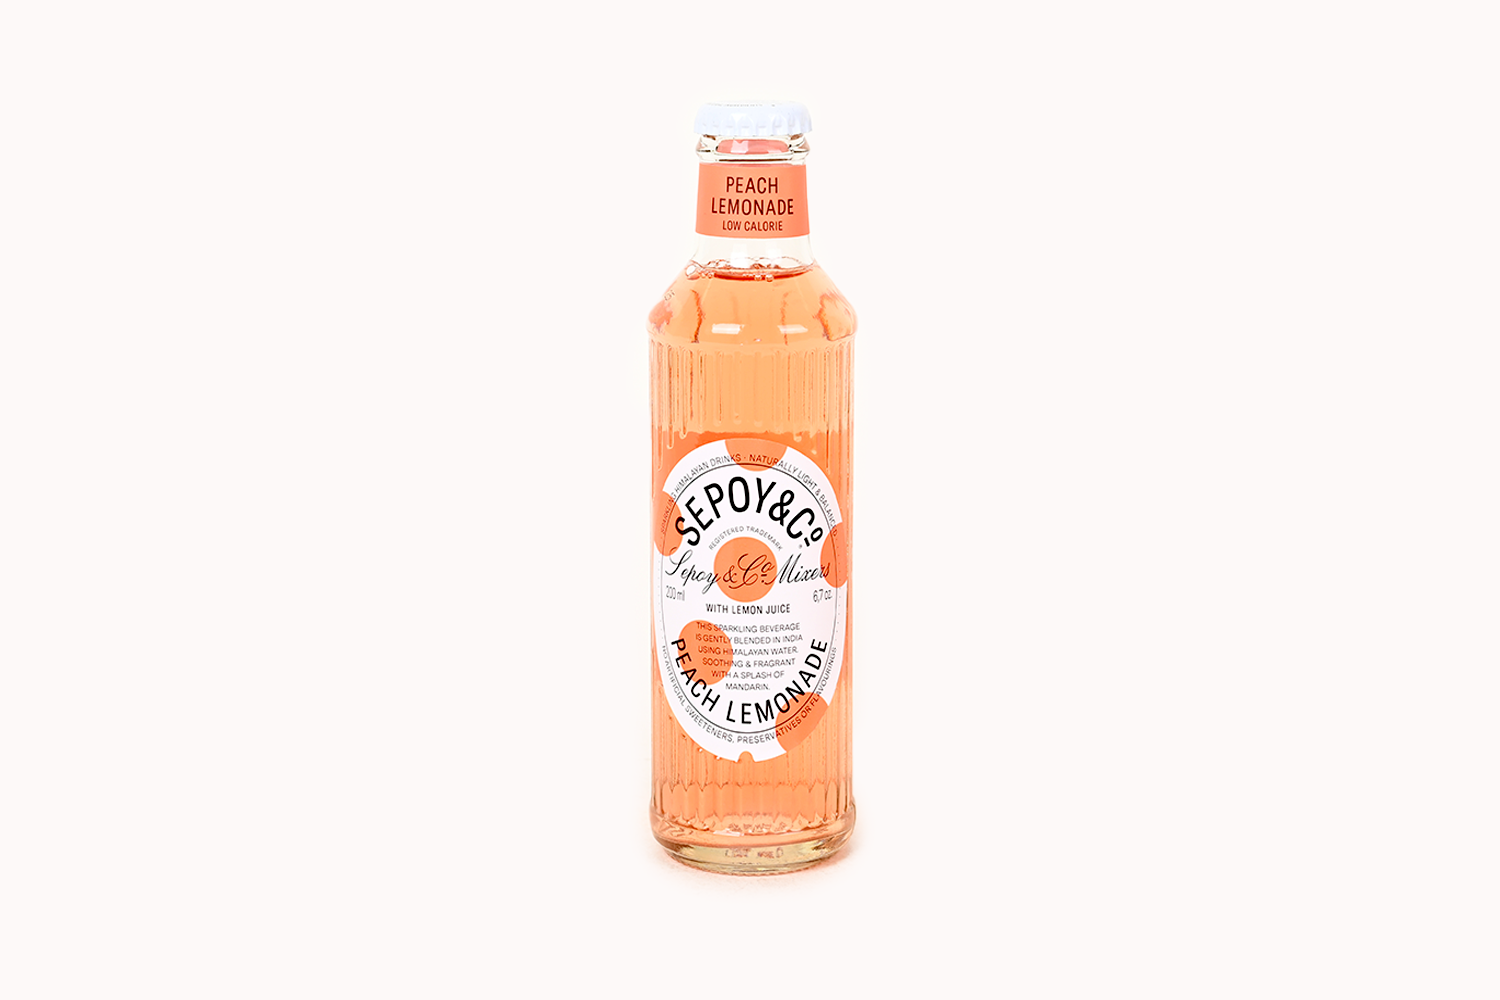 Sepoy & Co. Peach Lemonade